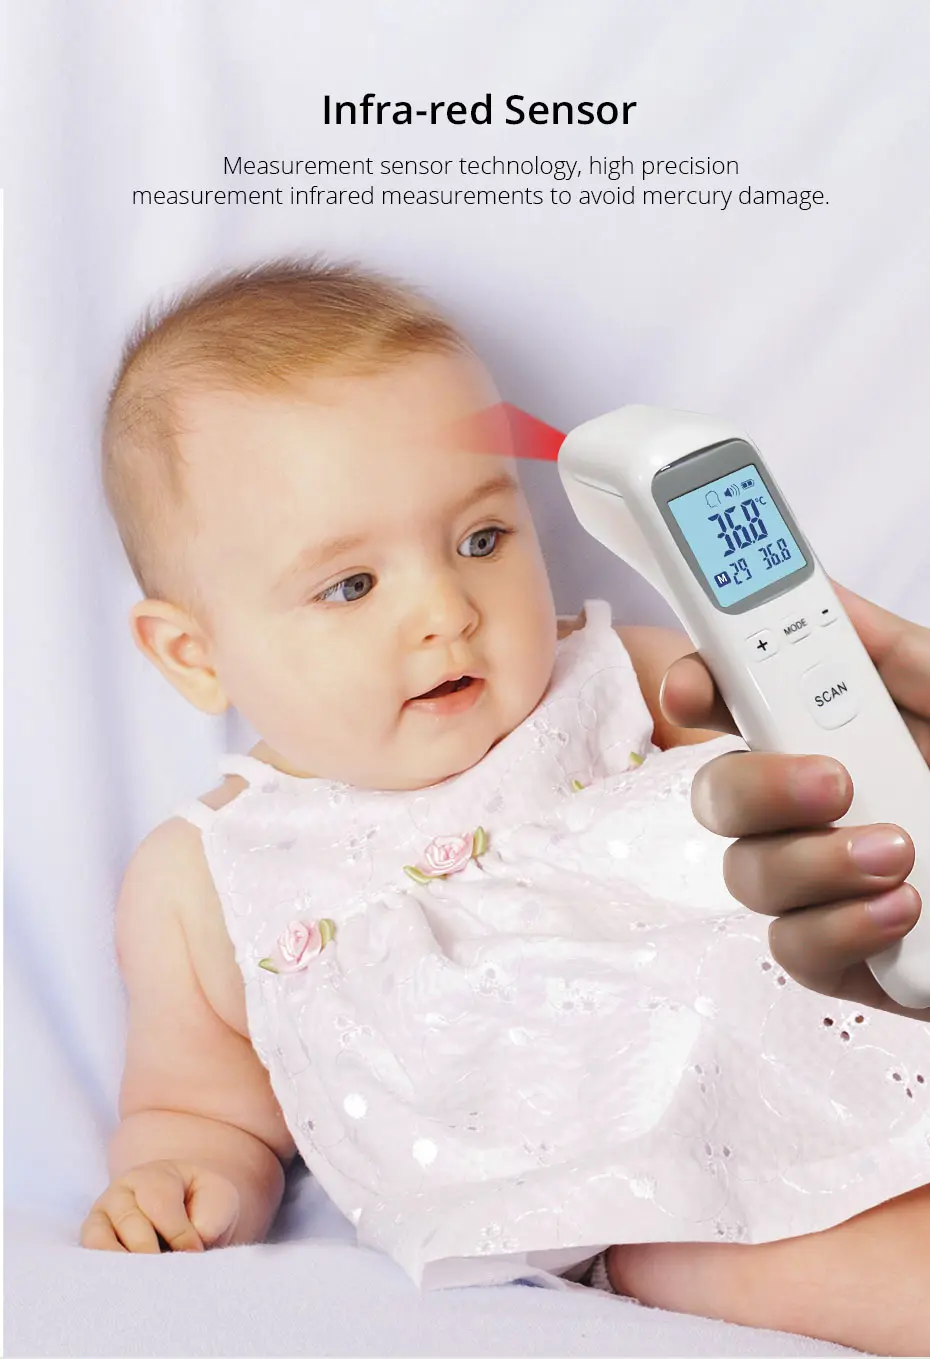 BOXYM медицинский Детский термометр портативный инфракрасный температура для детей Бесконтактный Лоб тела/предмет измерения ИК устройство